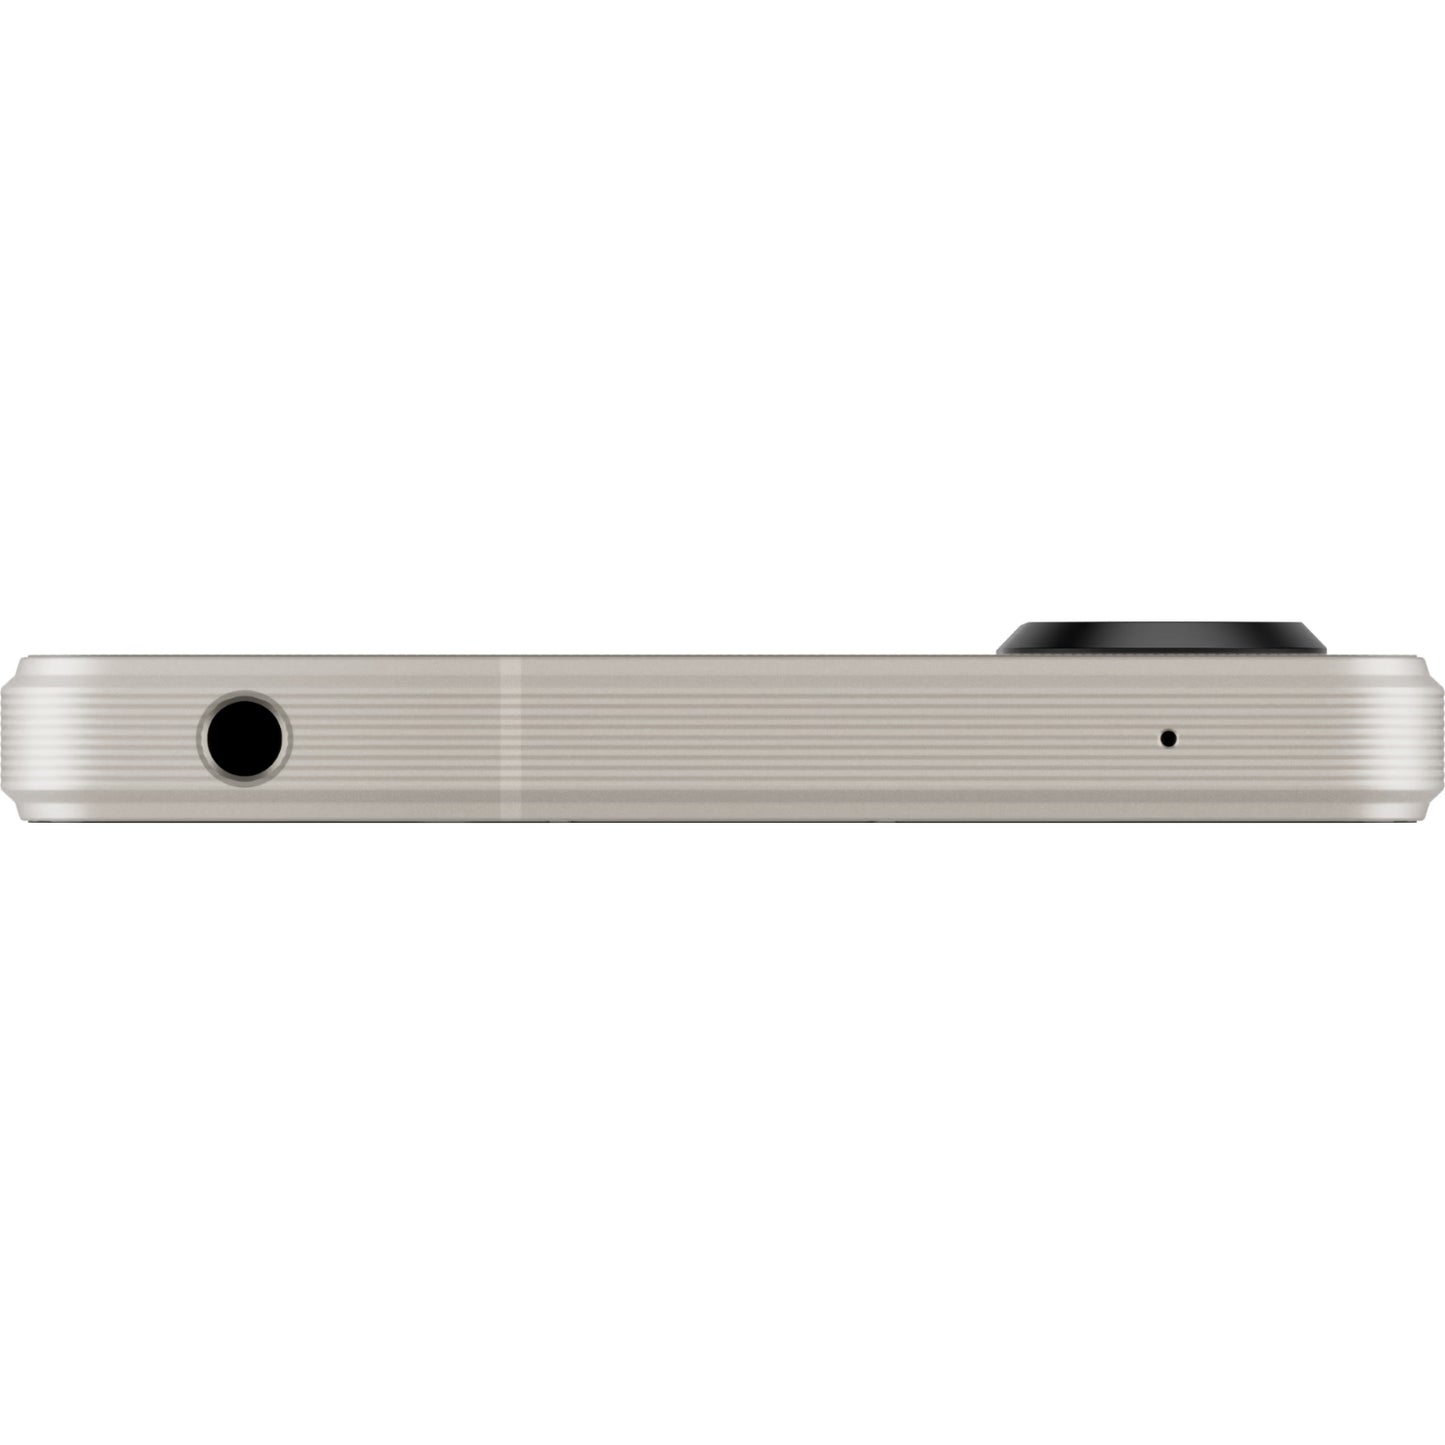 Sony Xperia 1 V Dual sim nano XQ-DQ72 5G (12GB ram) - MyMobile